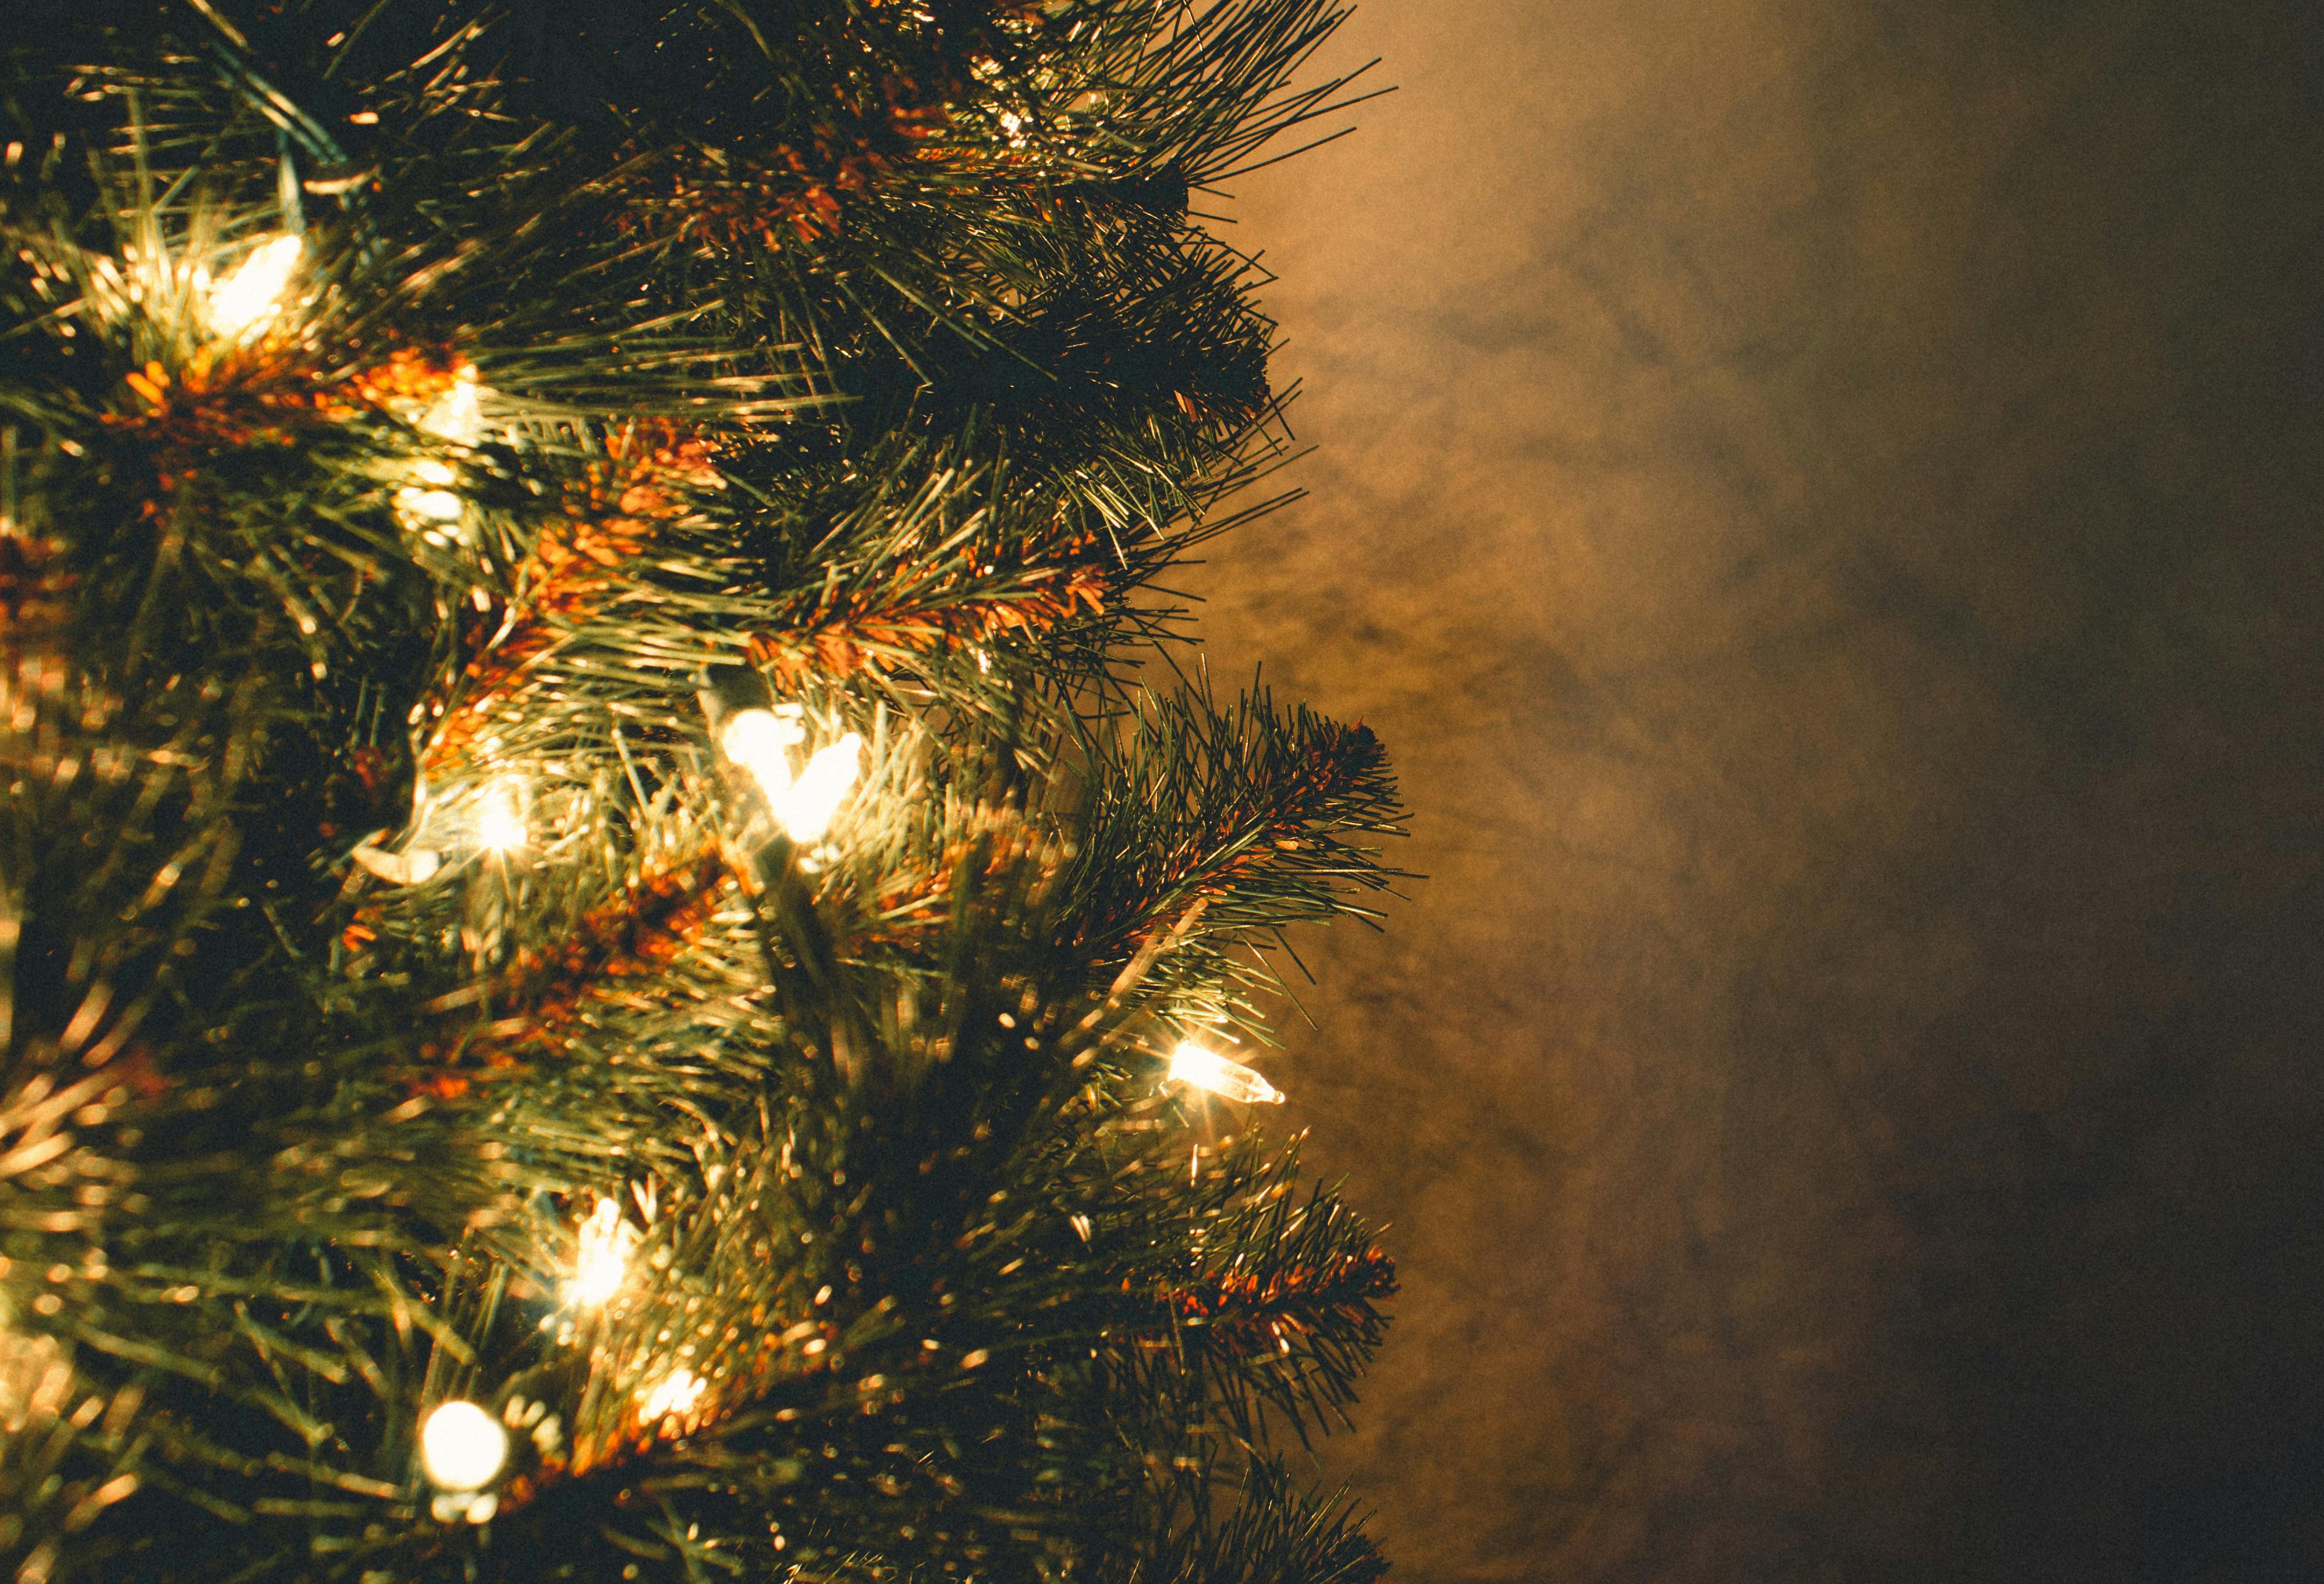 Hình ảnh đèn Giáng Sinh miễn phí tốt nhất sẽ đem đến một mùa Giáng Sinh đầy tràn niềm vui. Bạn sẽ tìm thấy những hình ảnh đầy tình cảm, tràn đầy màu sắc, đầy sức sống và hy vọng, và giúp cho mùa lễ hội trở nên đặc biệt hơn trong lòng của bạn.